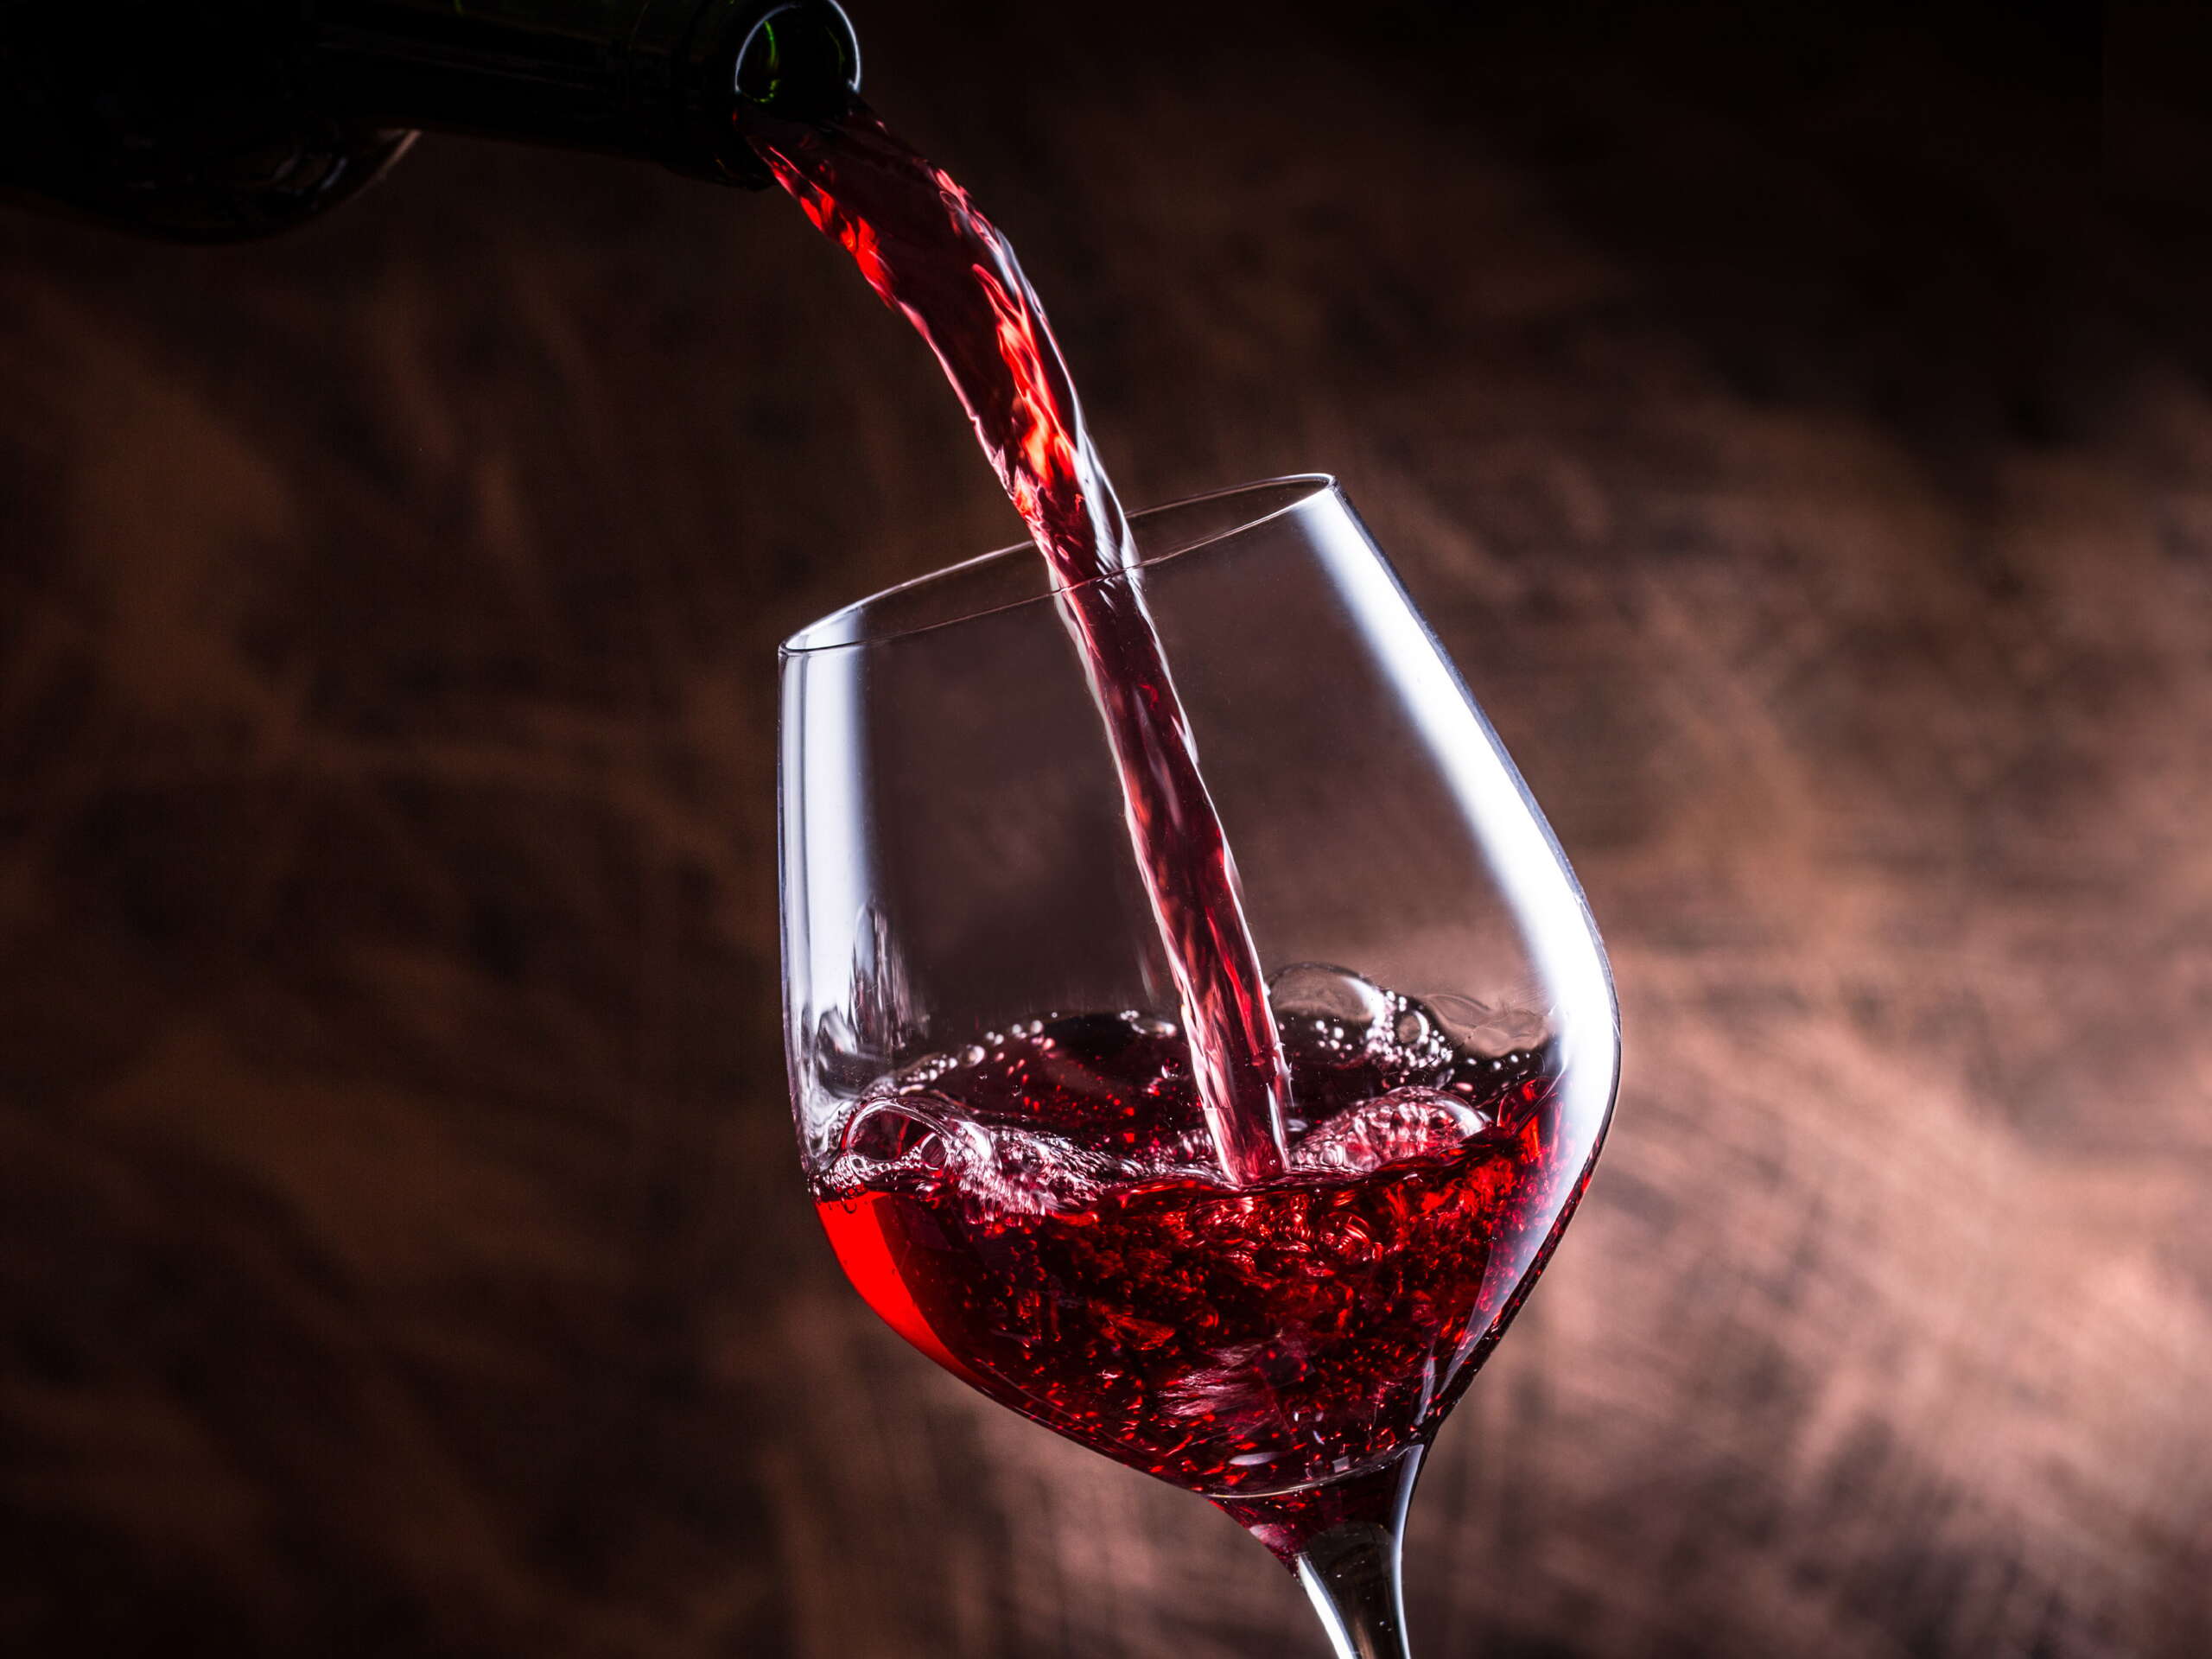 Ein Weinglas in das Rotwein eingeschenkt wird.